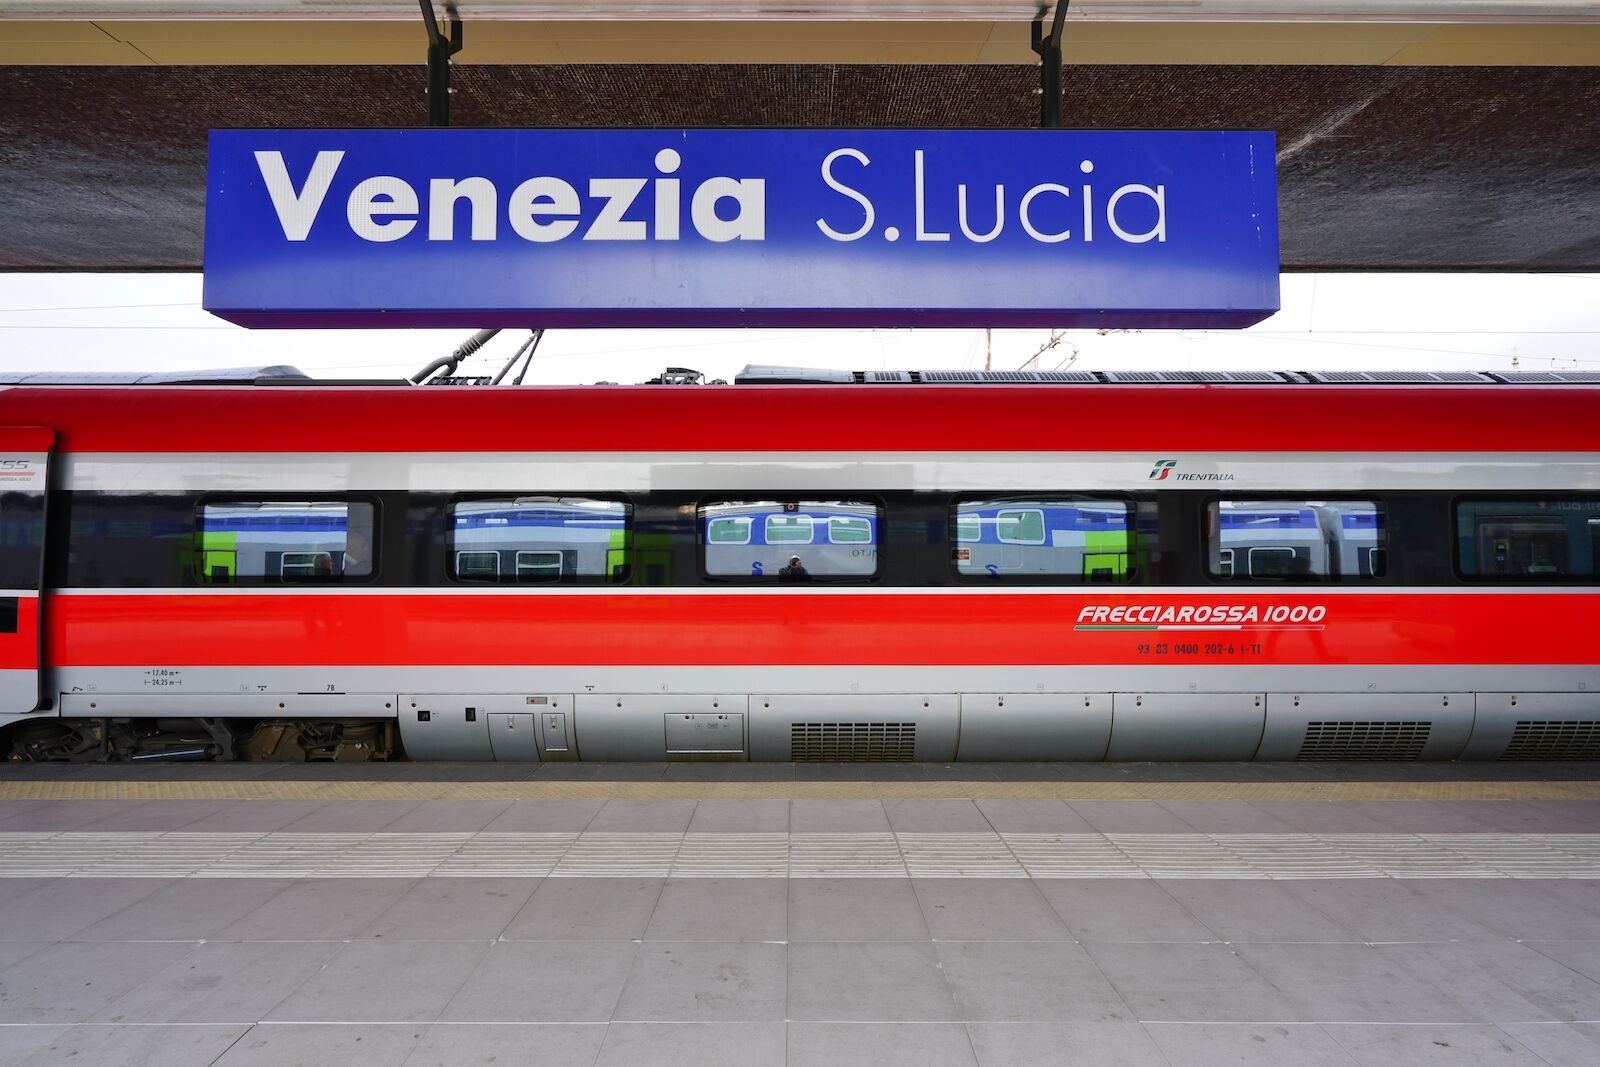 The Italian high-speed train Frecciarossa 1000 arriving in Venice S Lucia train station